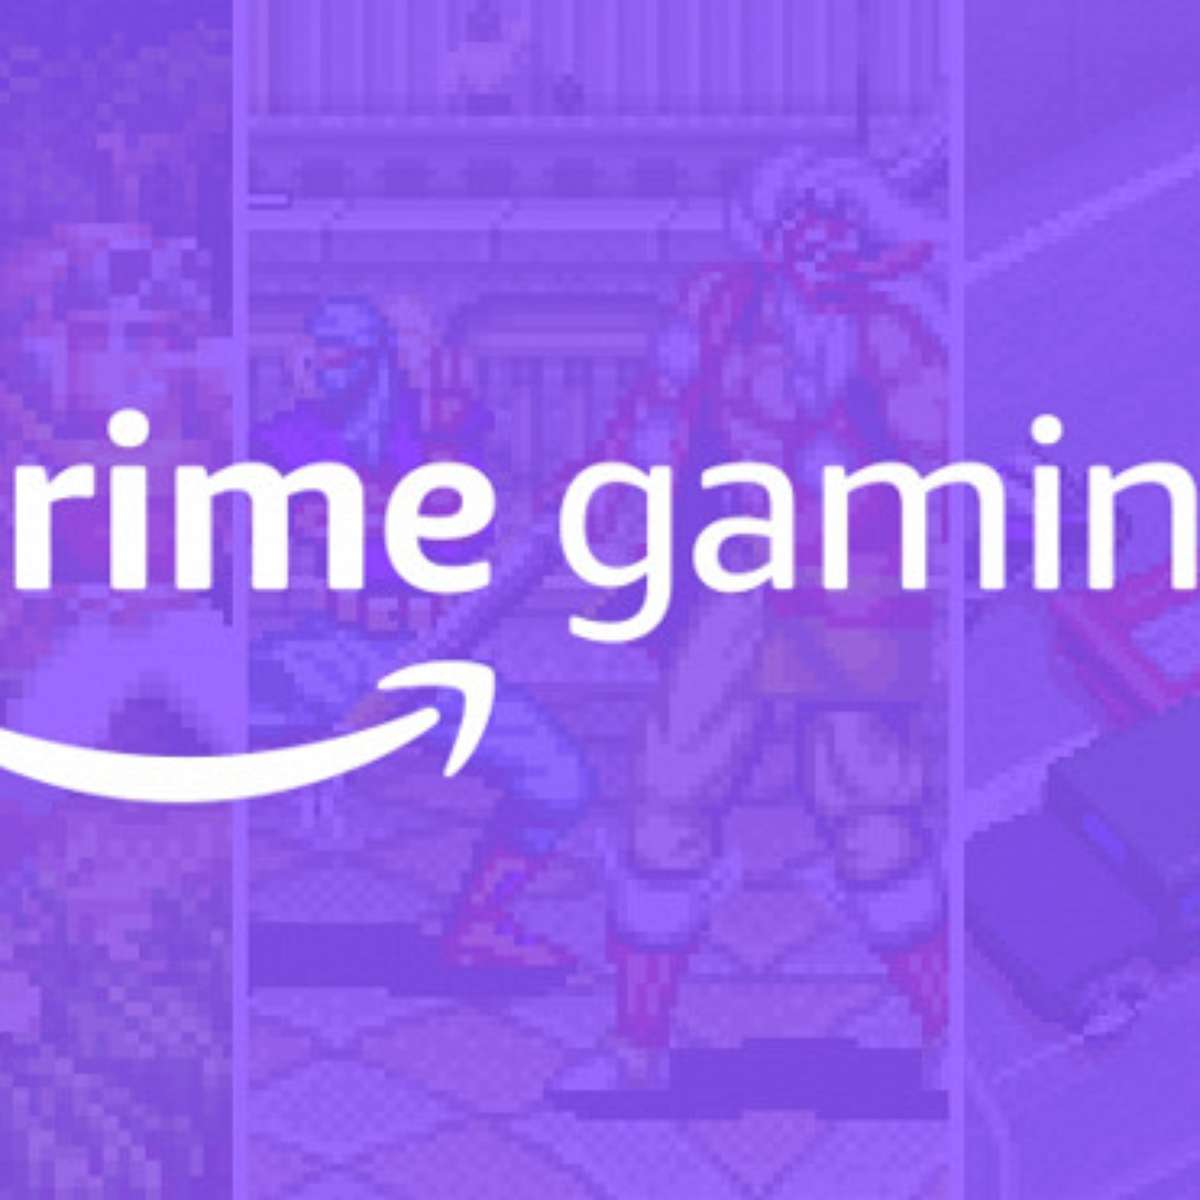 Quais jogos estão disponíveis no  Prime Gaming? (Junho/2023)